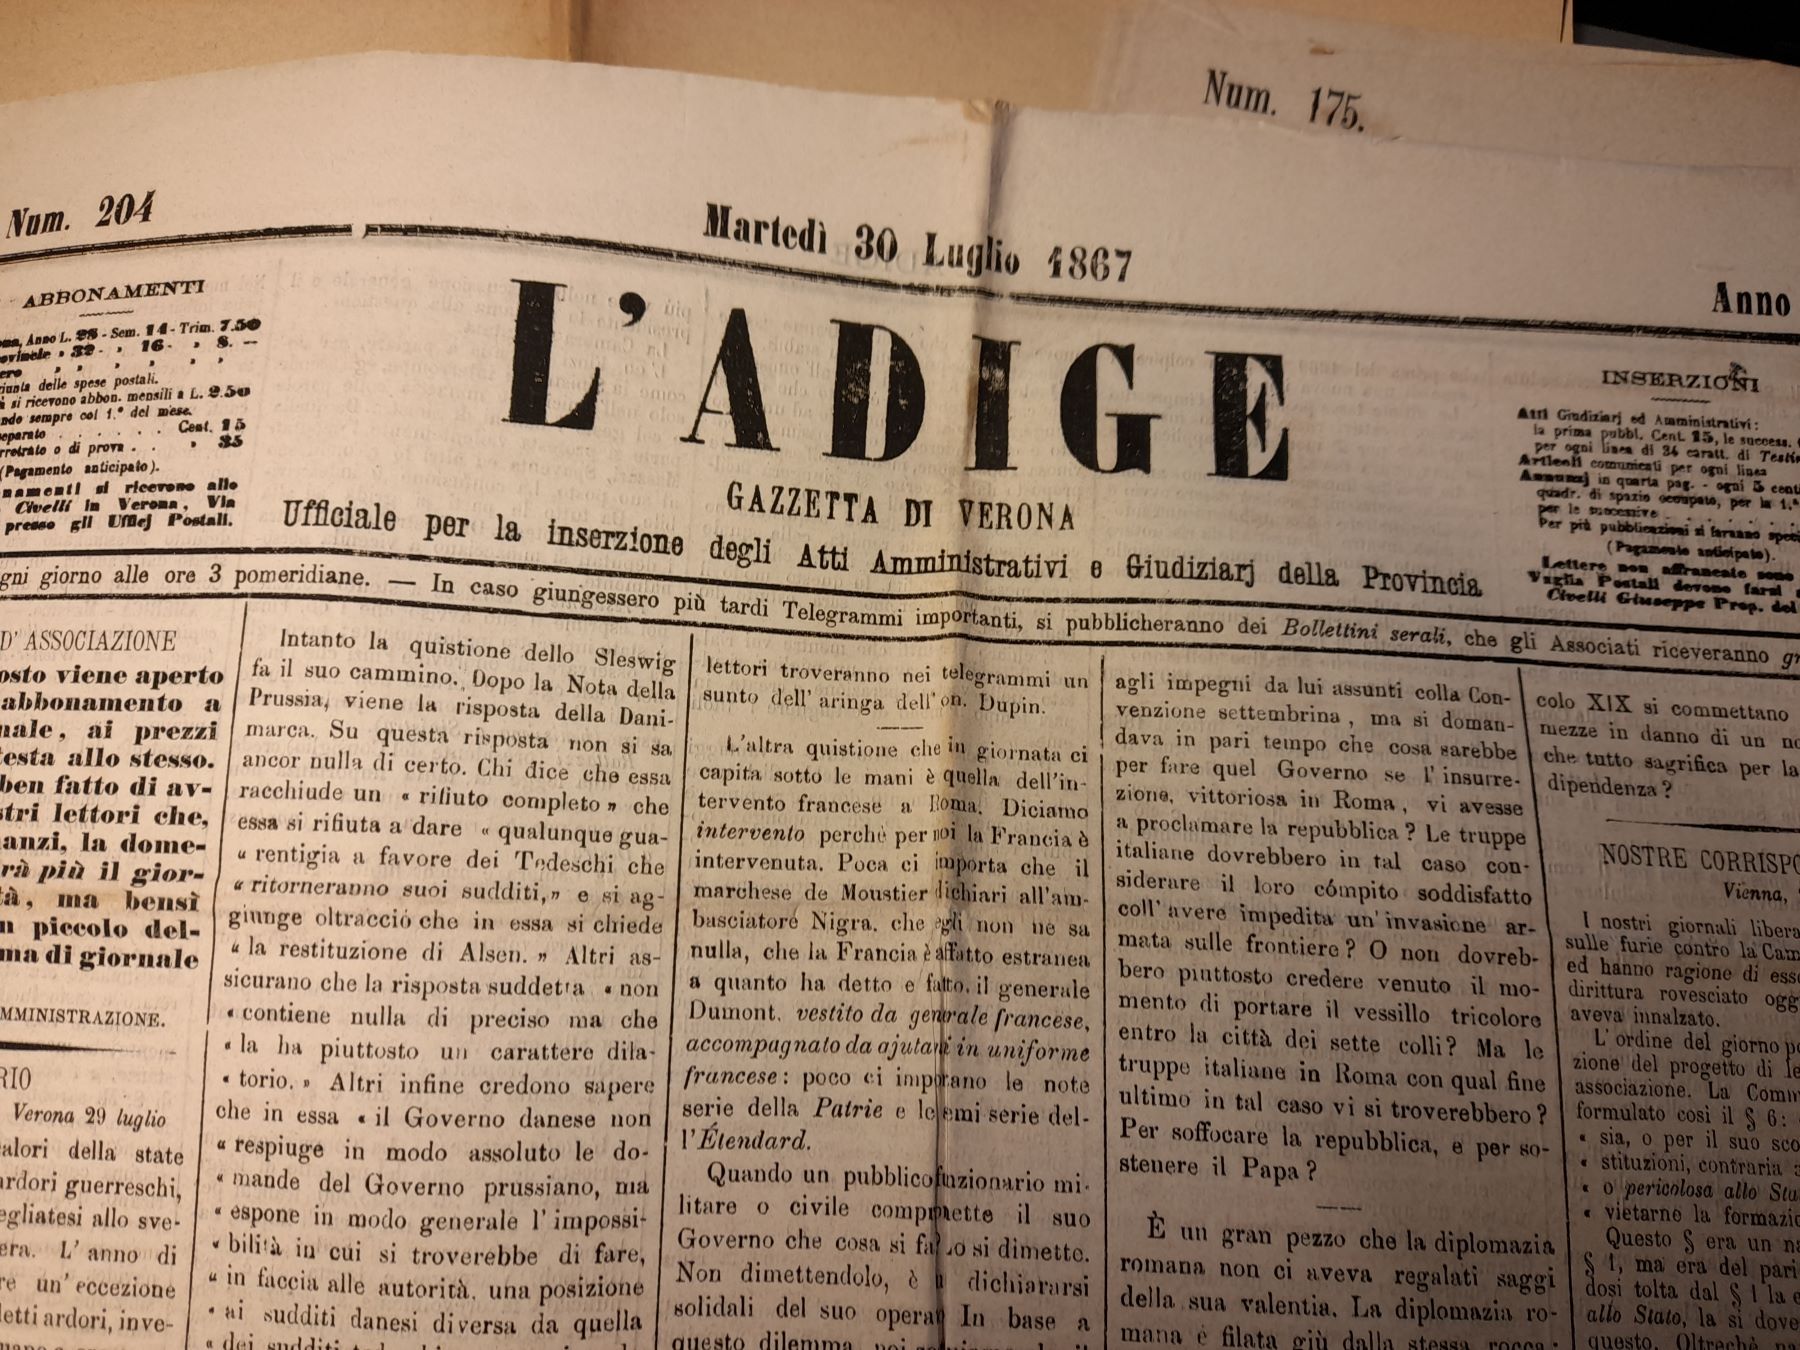 15 ottobre 1866, debutta nelle edicole il quotidiano L’Adige